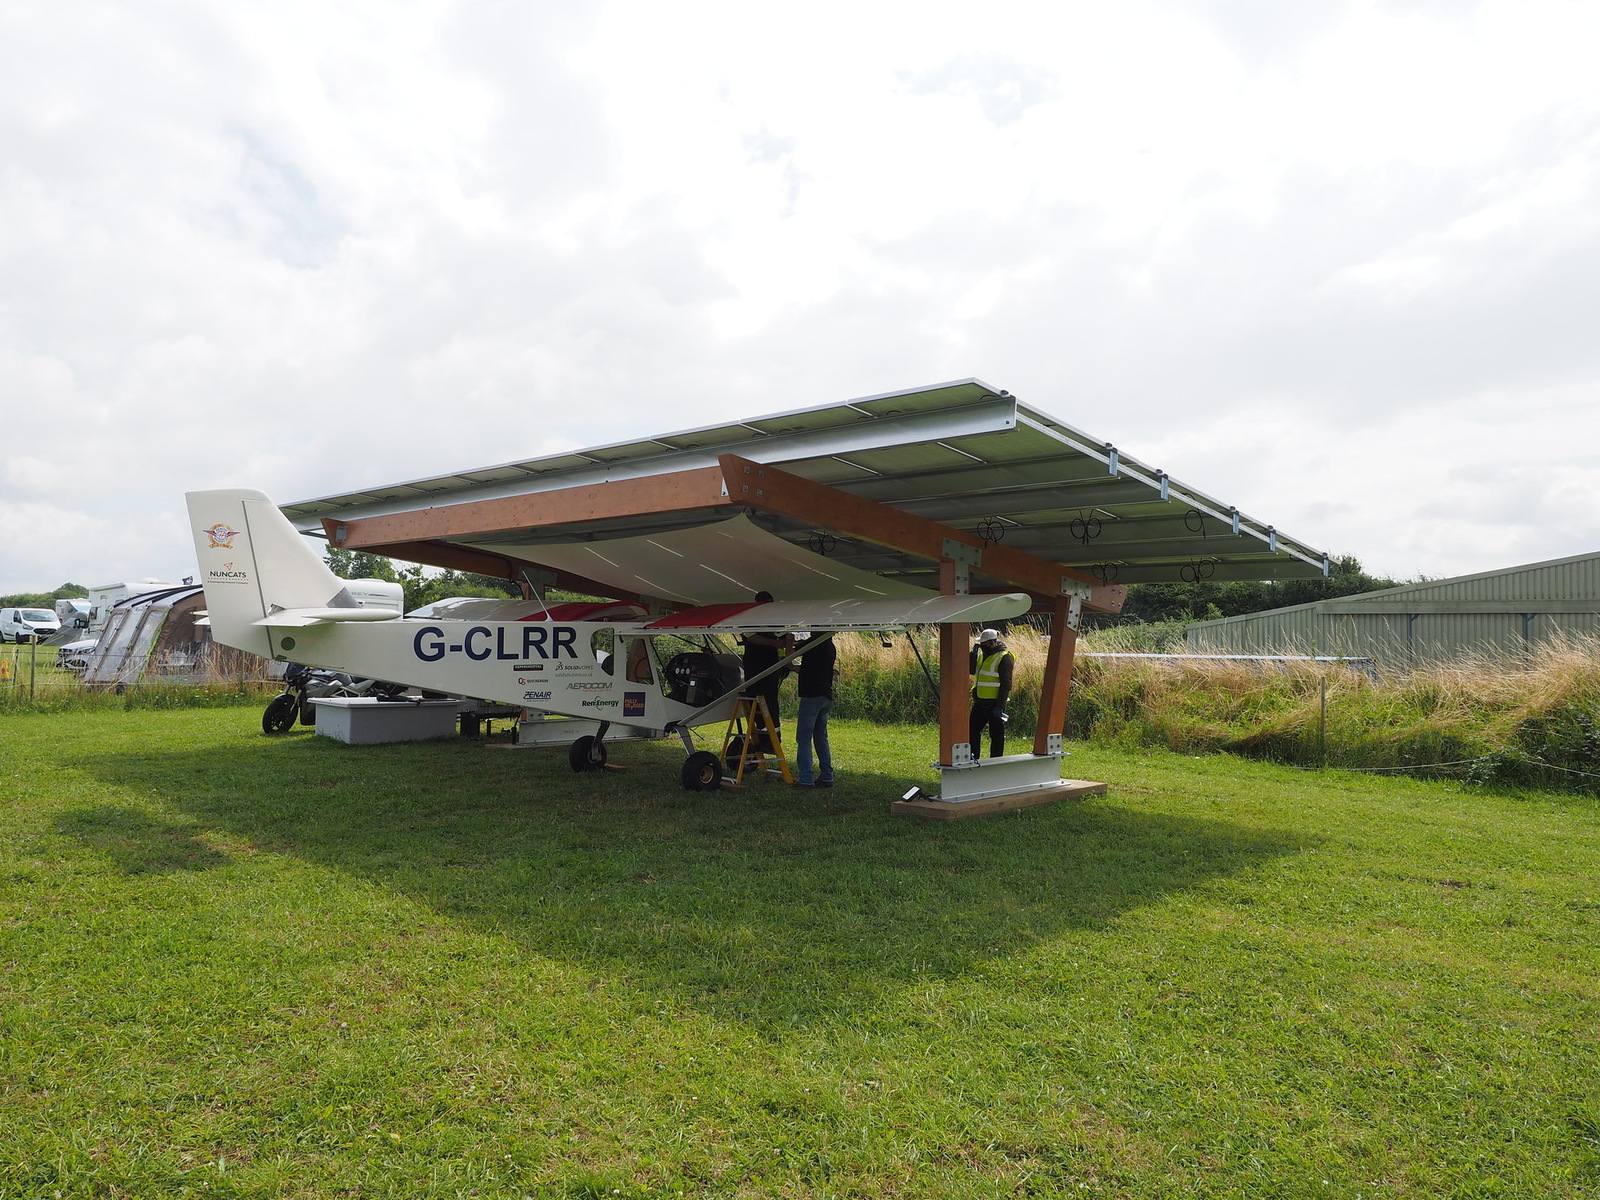 UK: Eine solare Ladestation für E-Flieger